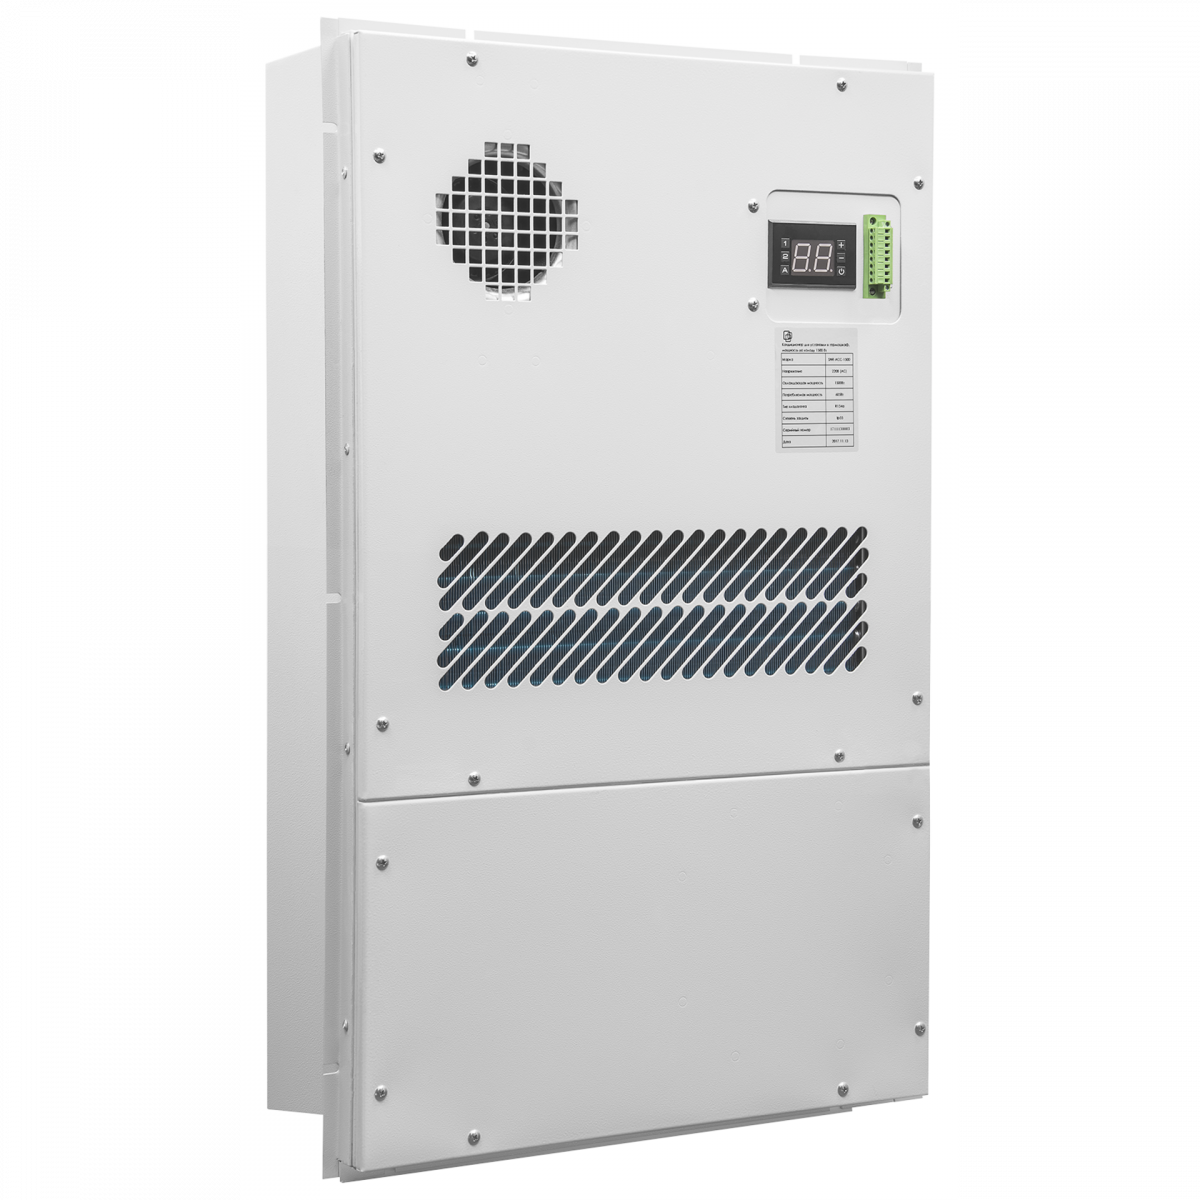 Кондиционер для установки в уличный шкаф, холодопроизводительность1500Вт, со встроенным электрическим калорифером, 220В переменного тока